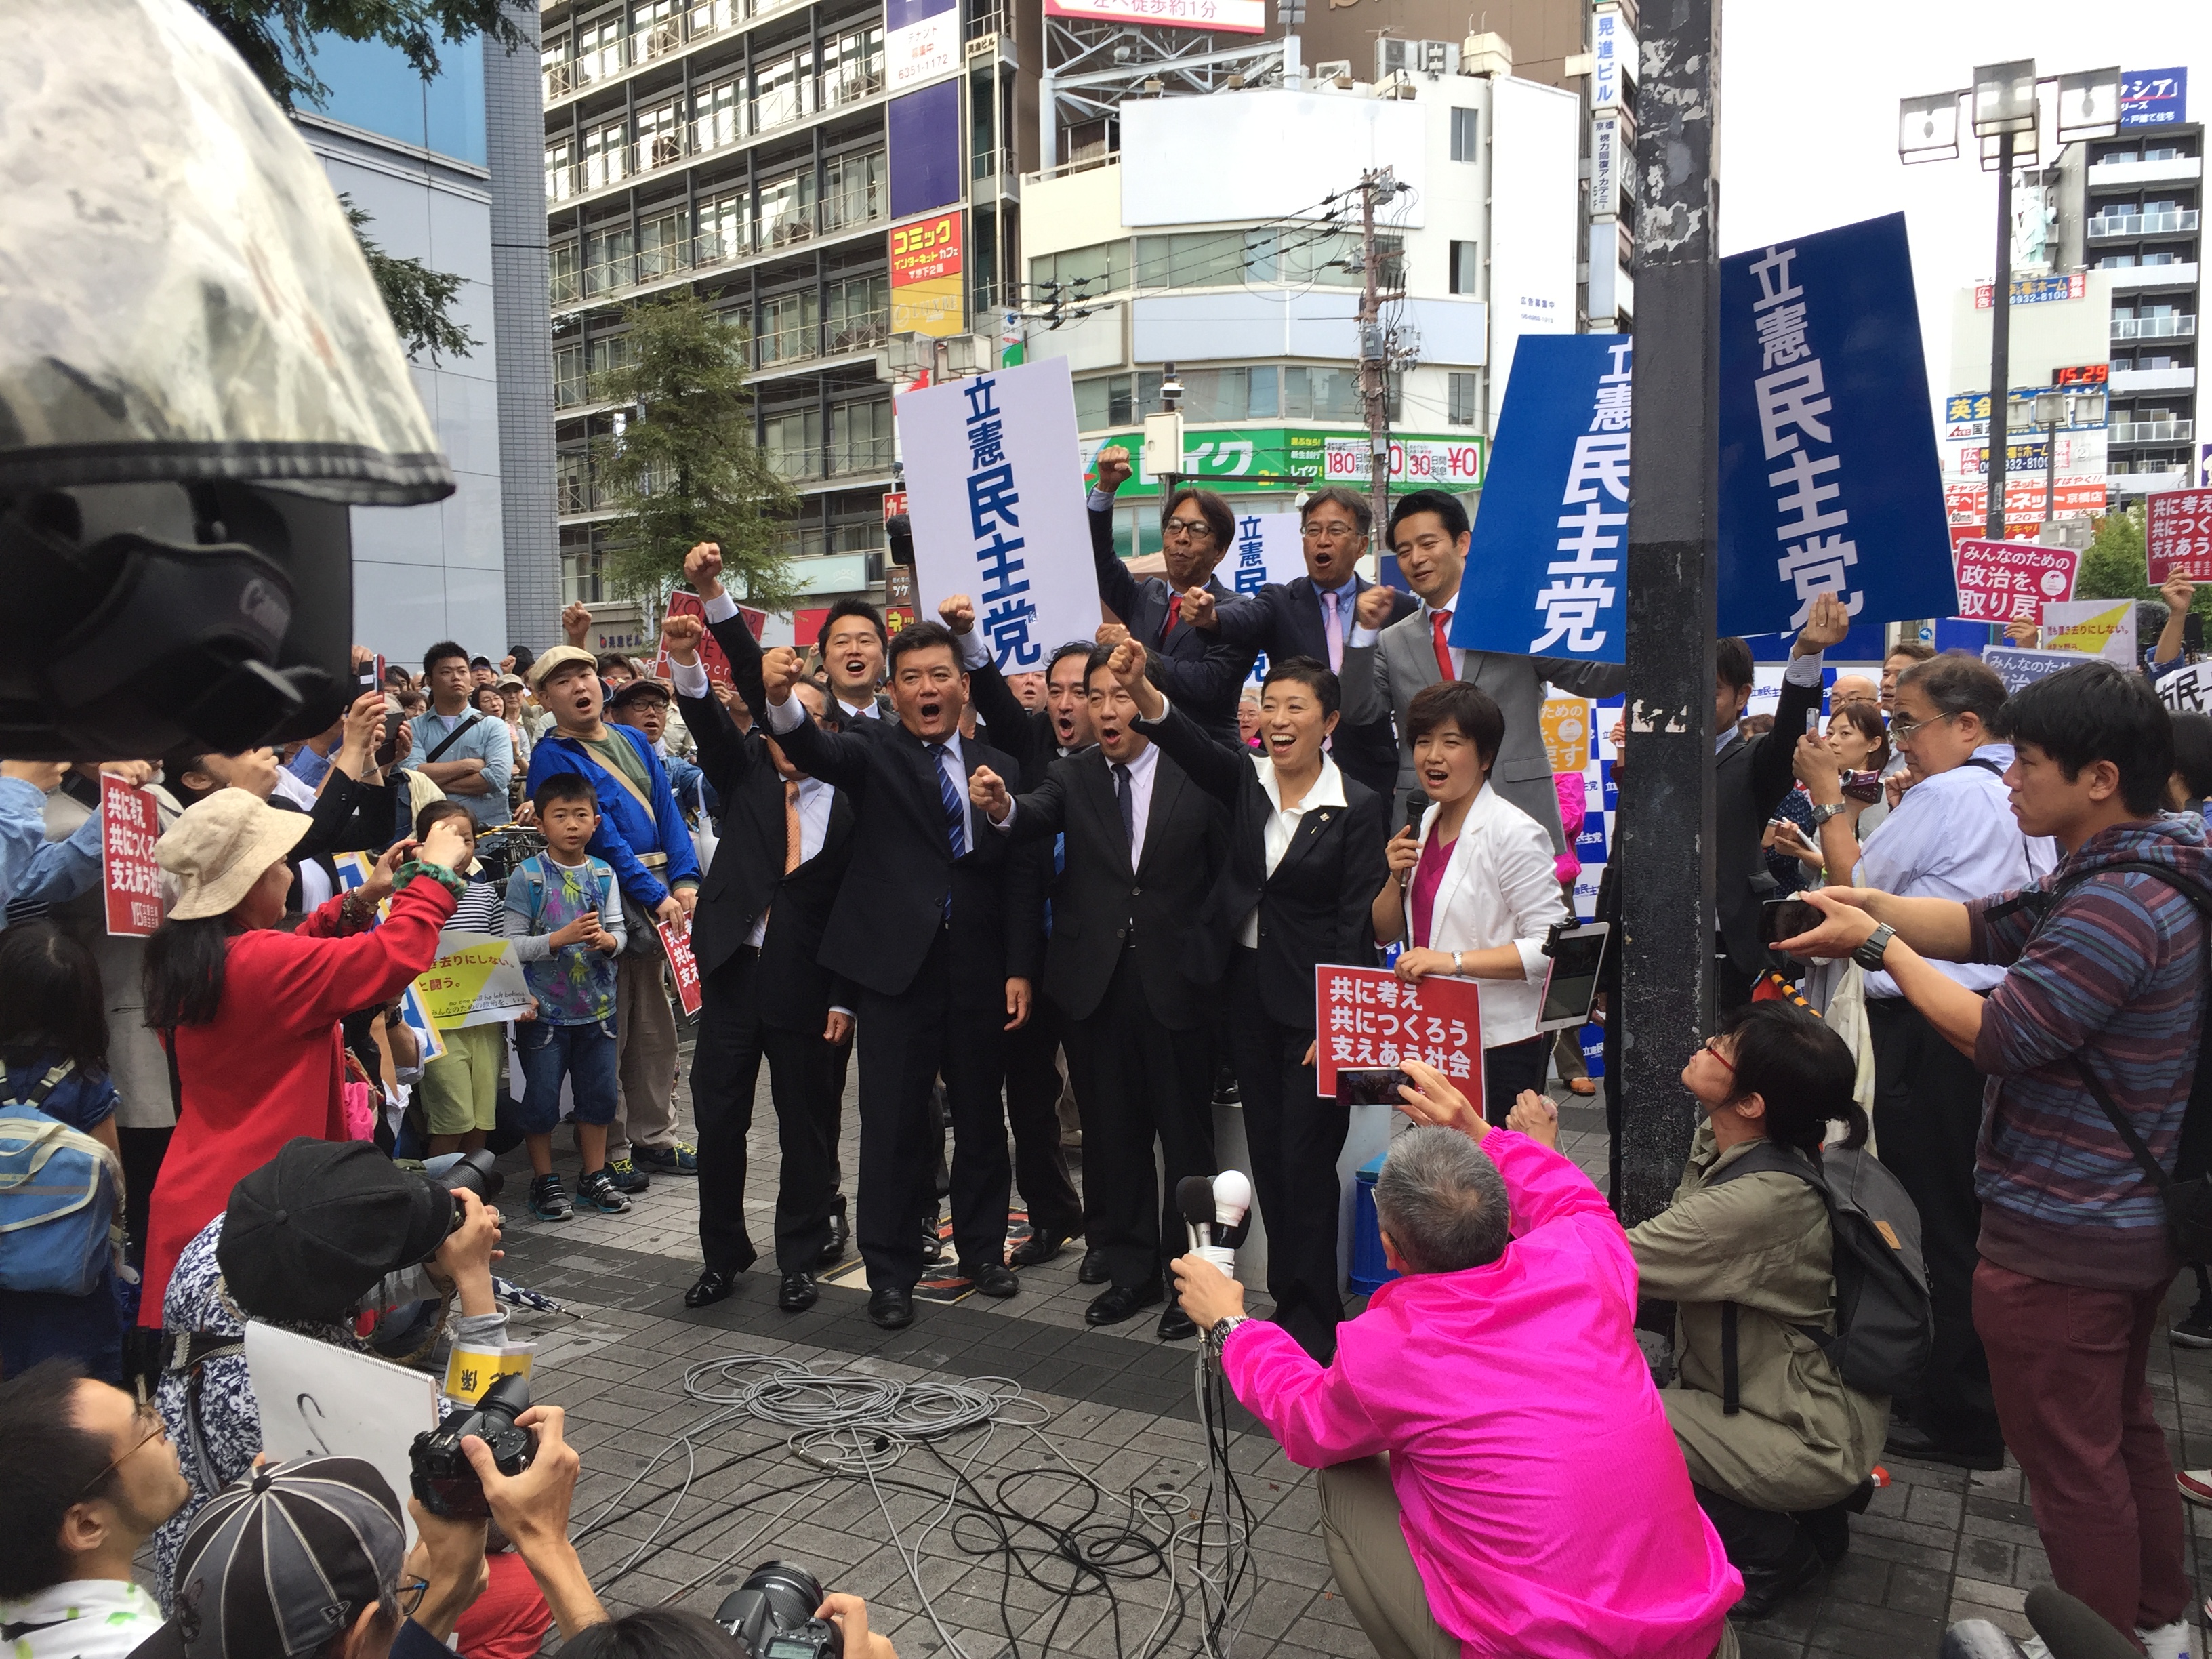 立憲民主党・枝野幸男代表の大阪初街宣。尾辻かな子、辻元清美らも参加